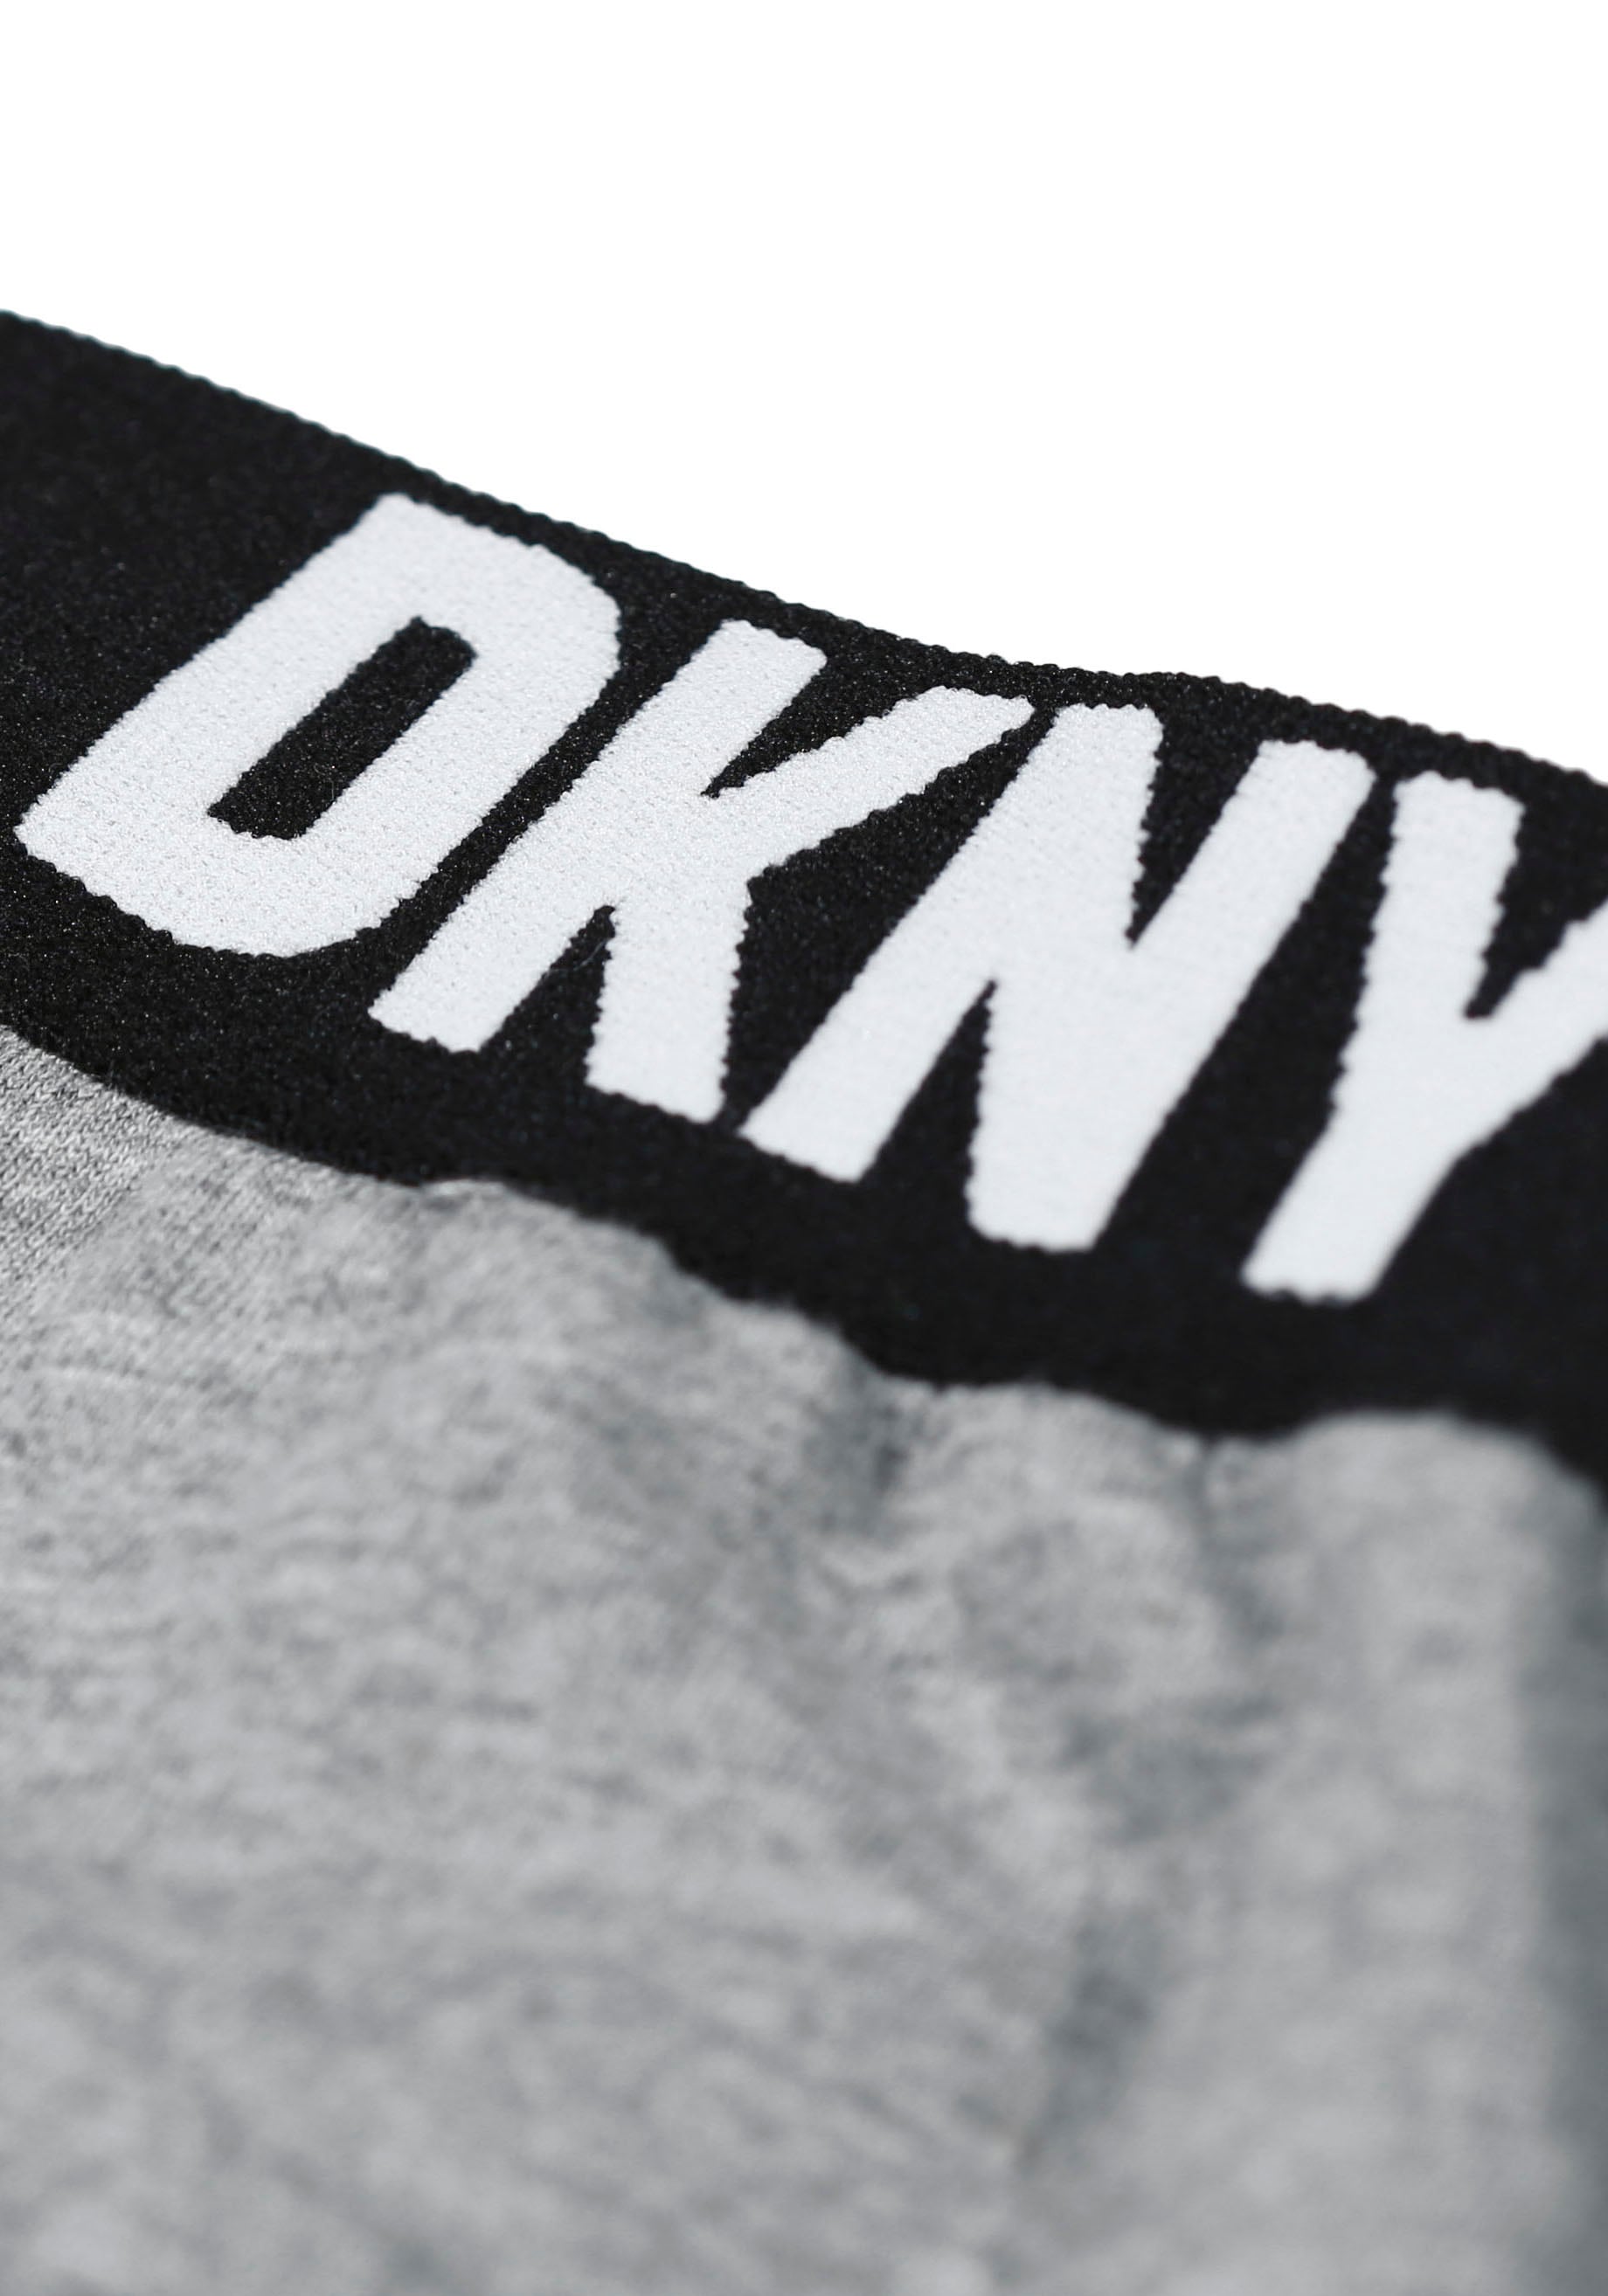 DKNY Loungepants, mit elastischem Logo-Bündchen